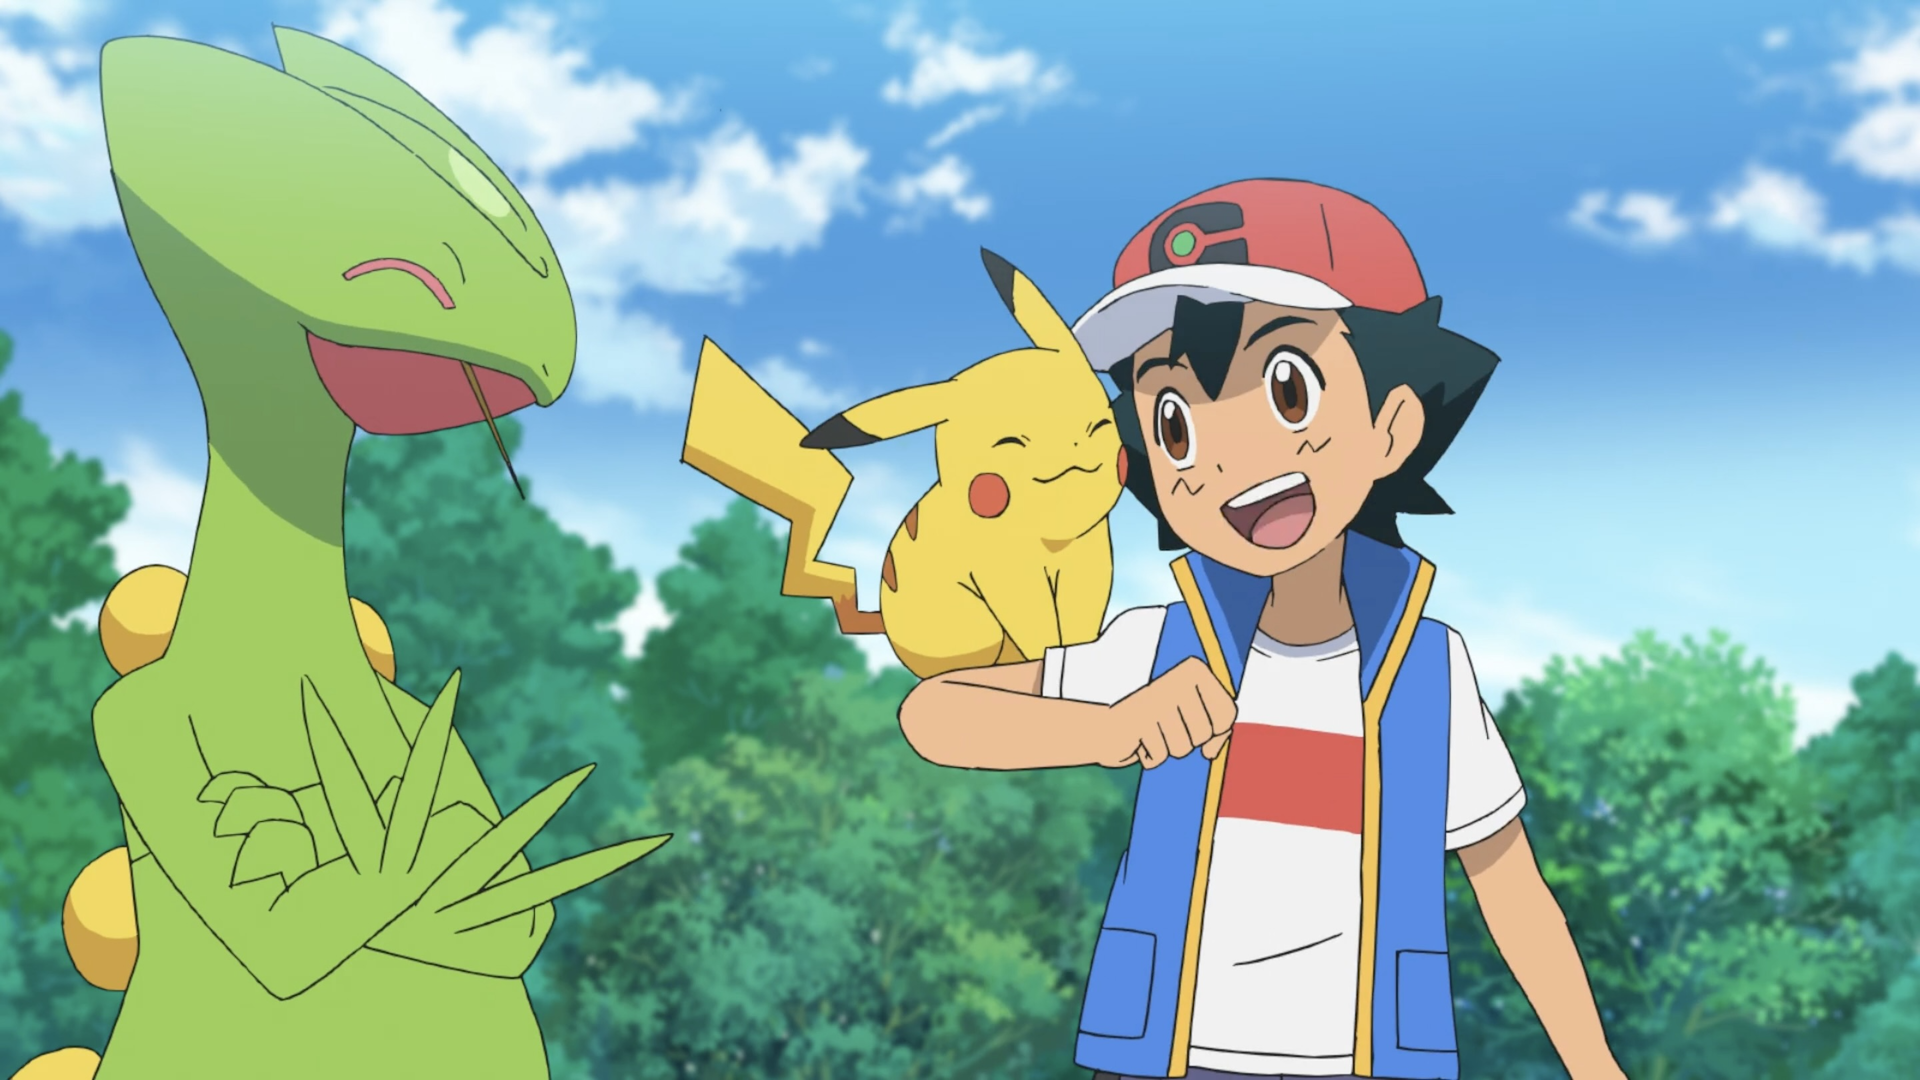 How many shiny pokemon did Ash catch? - The Pokémon Trivia Quiz